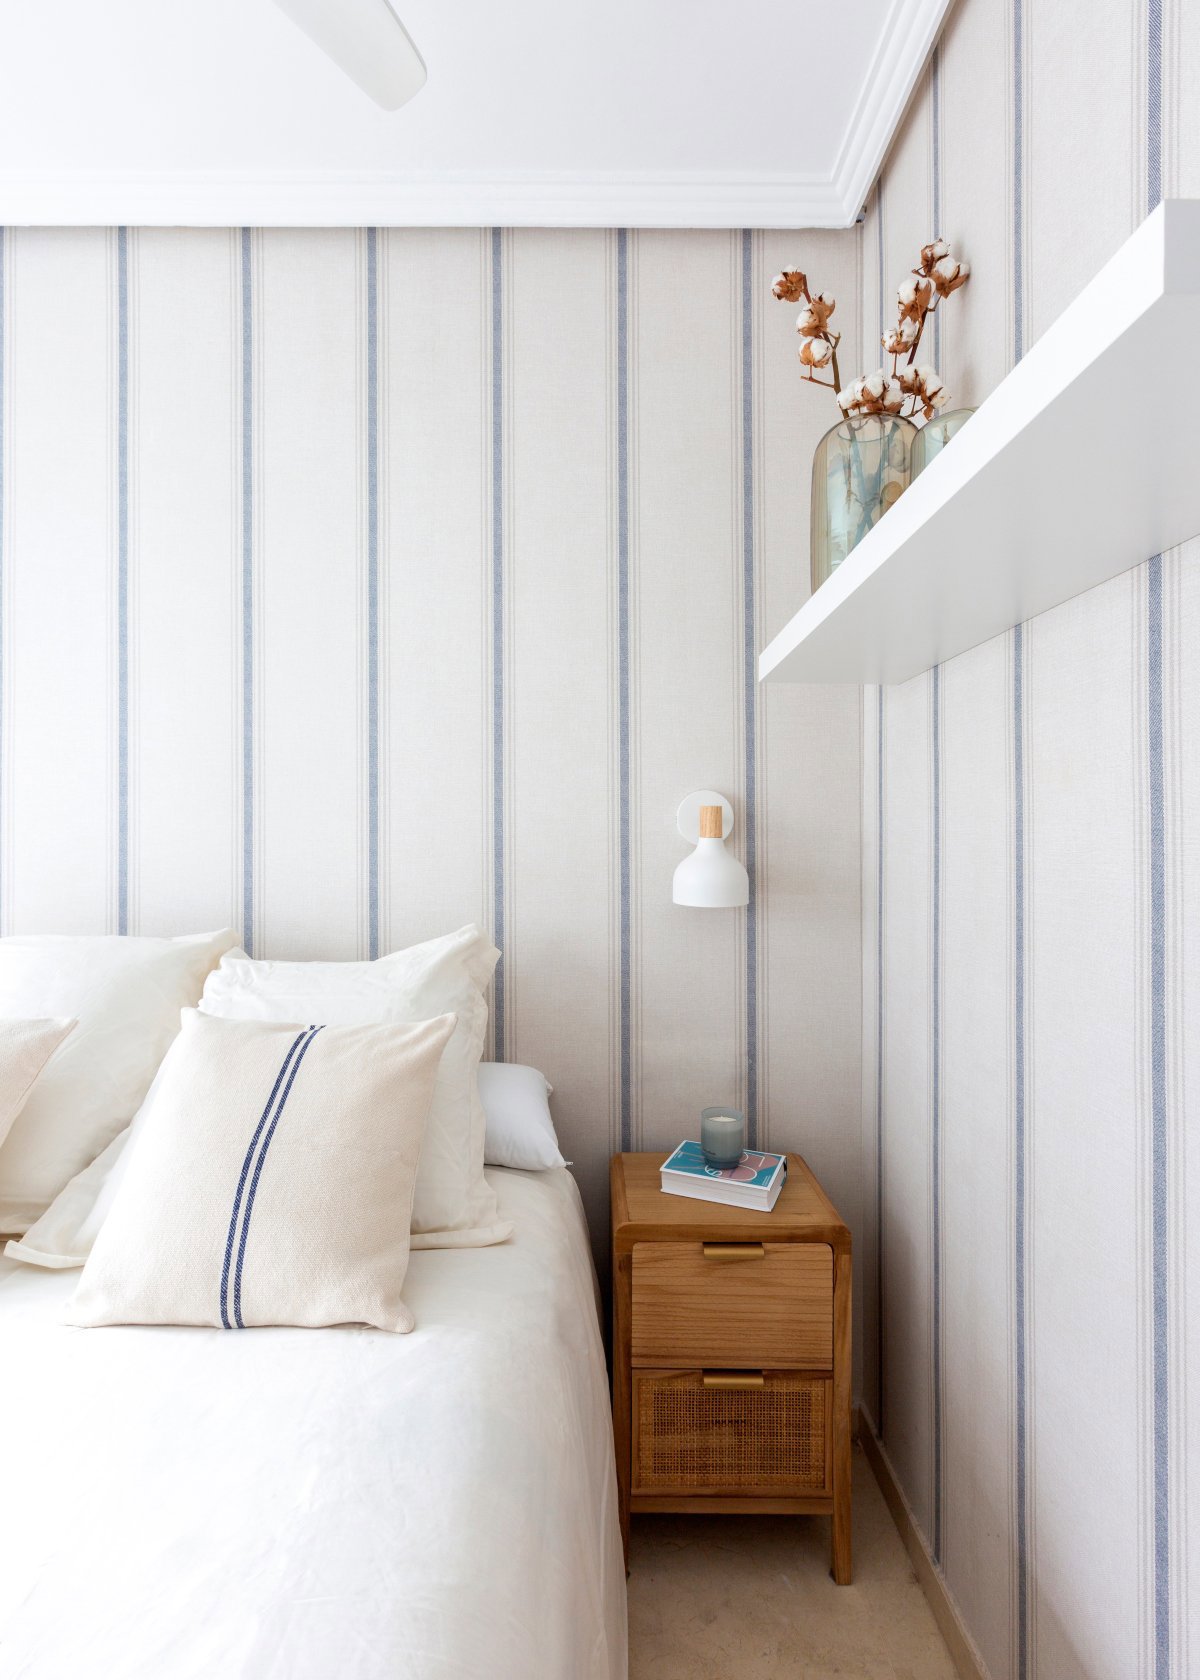 Dormitorio con papel pintado a rayas azules